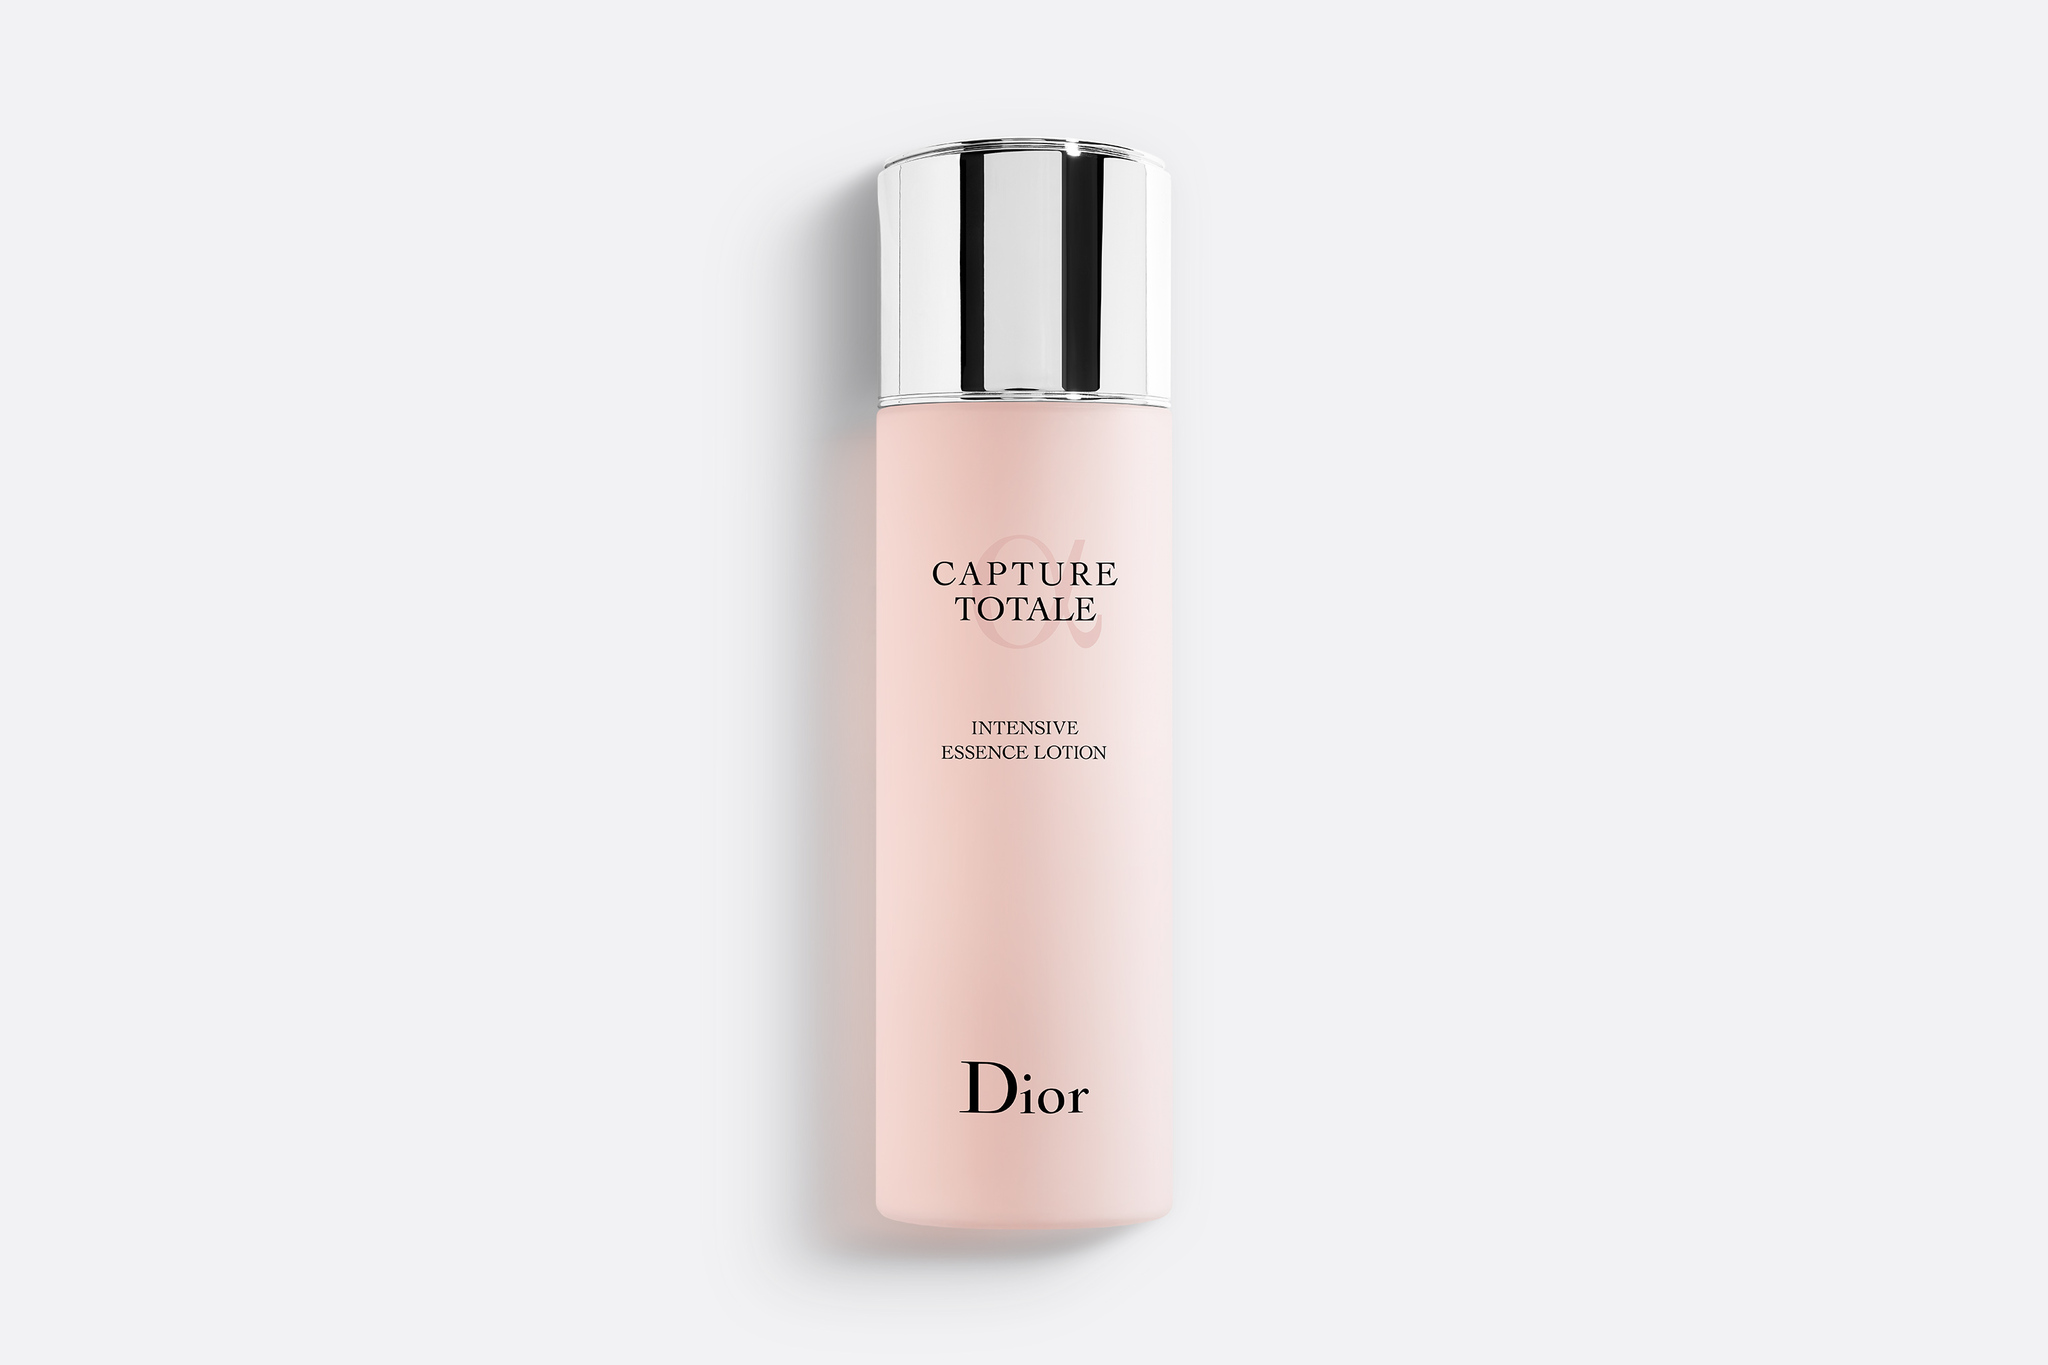 Rouge Dior Écrin Couture  Официальный онлайнбутик Dior  Dior   официальный интернетмагазин парфюмерии и косметики Диор в России